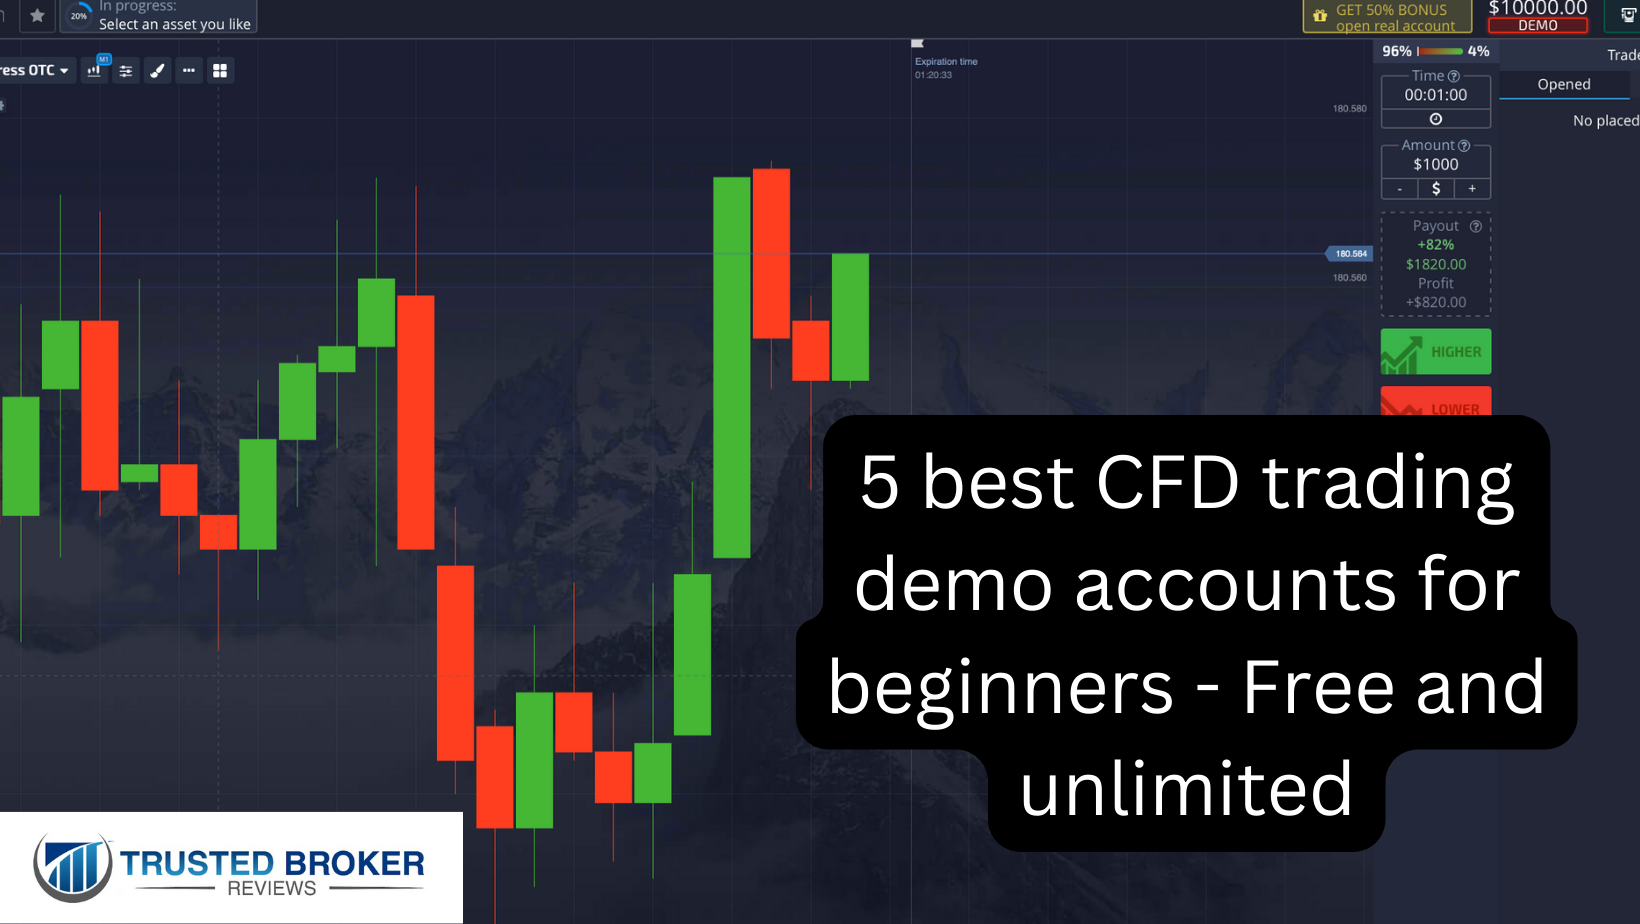 Yeni başlayanlar için en iyi 5 CFD ticaret demo hesabı - Ücretsiz ve sınırsız